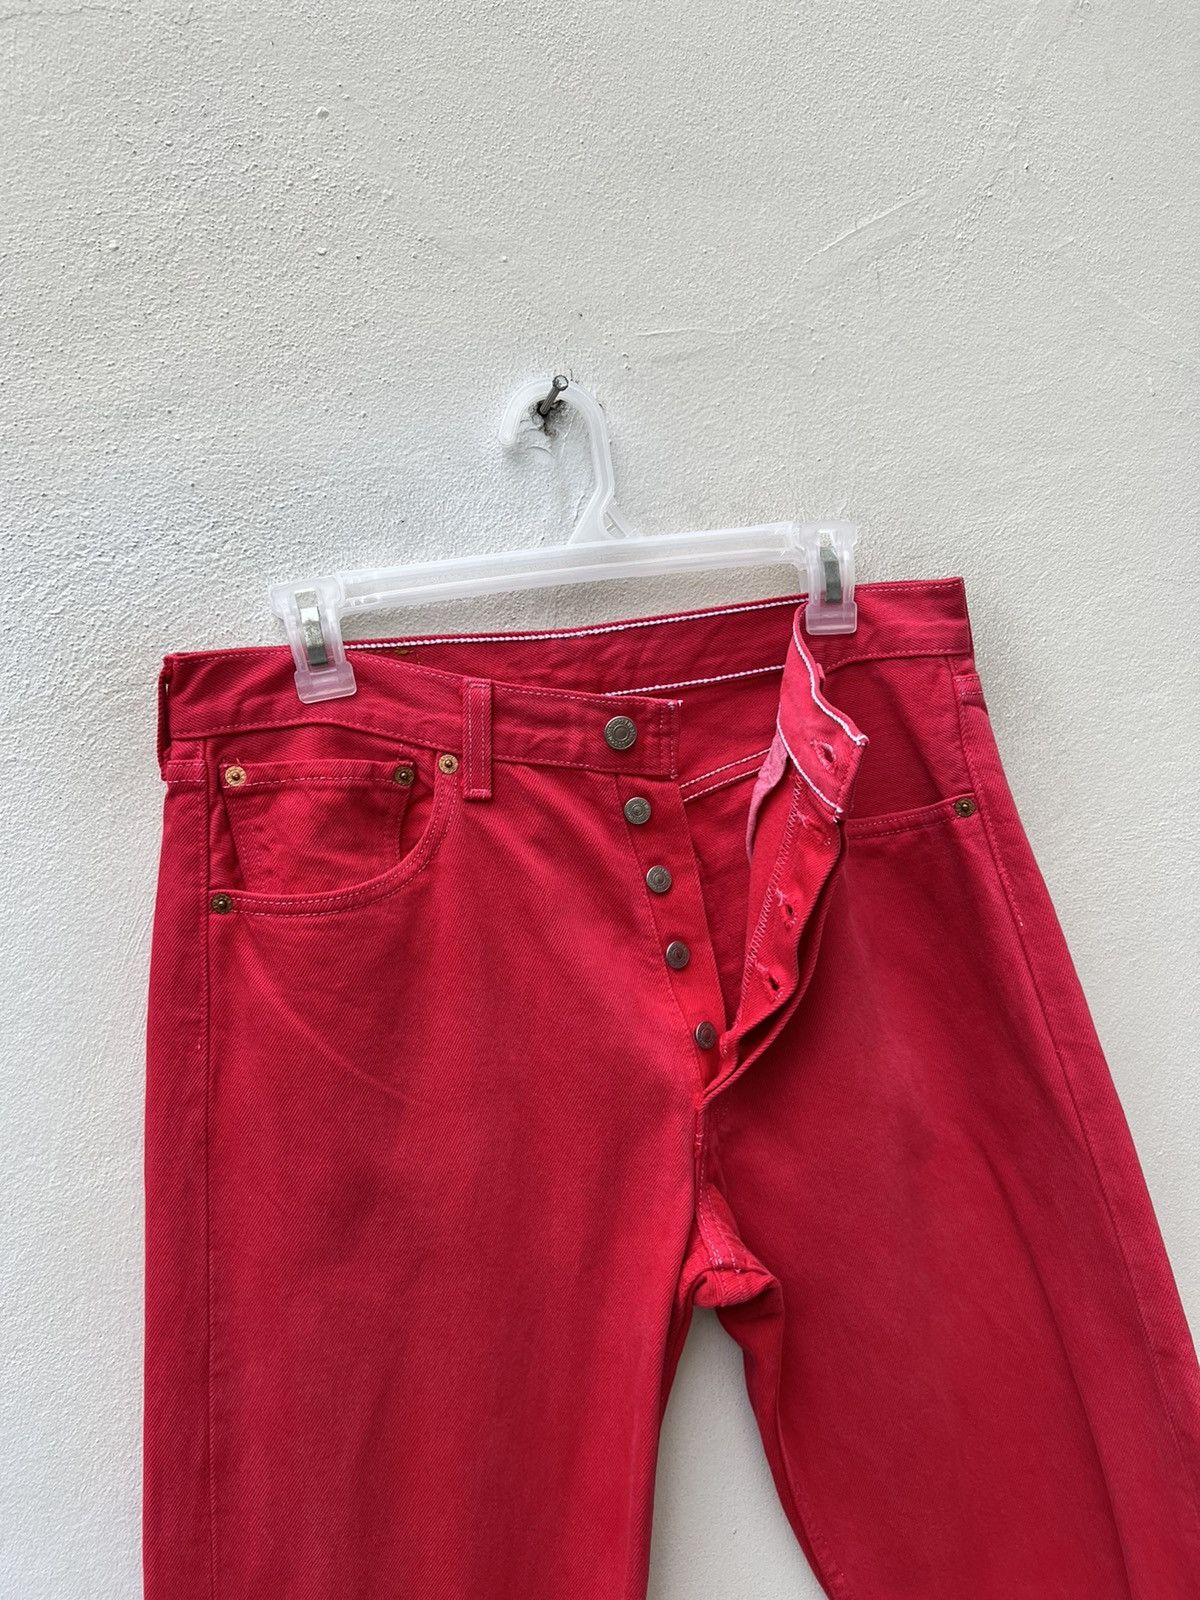 Vintage Vintage 1999 Levi’s 501 Fade Red Denim Jeans Size US 31 - 8 Thumbnail